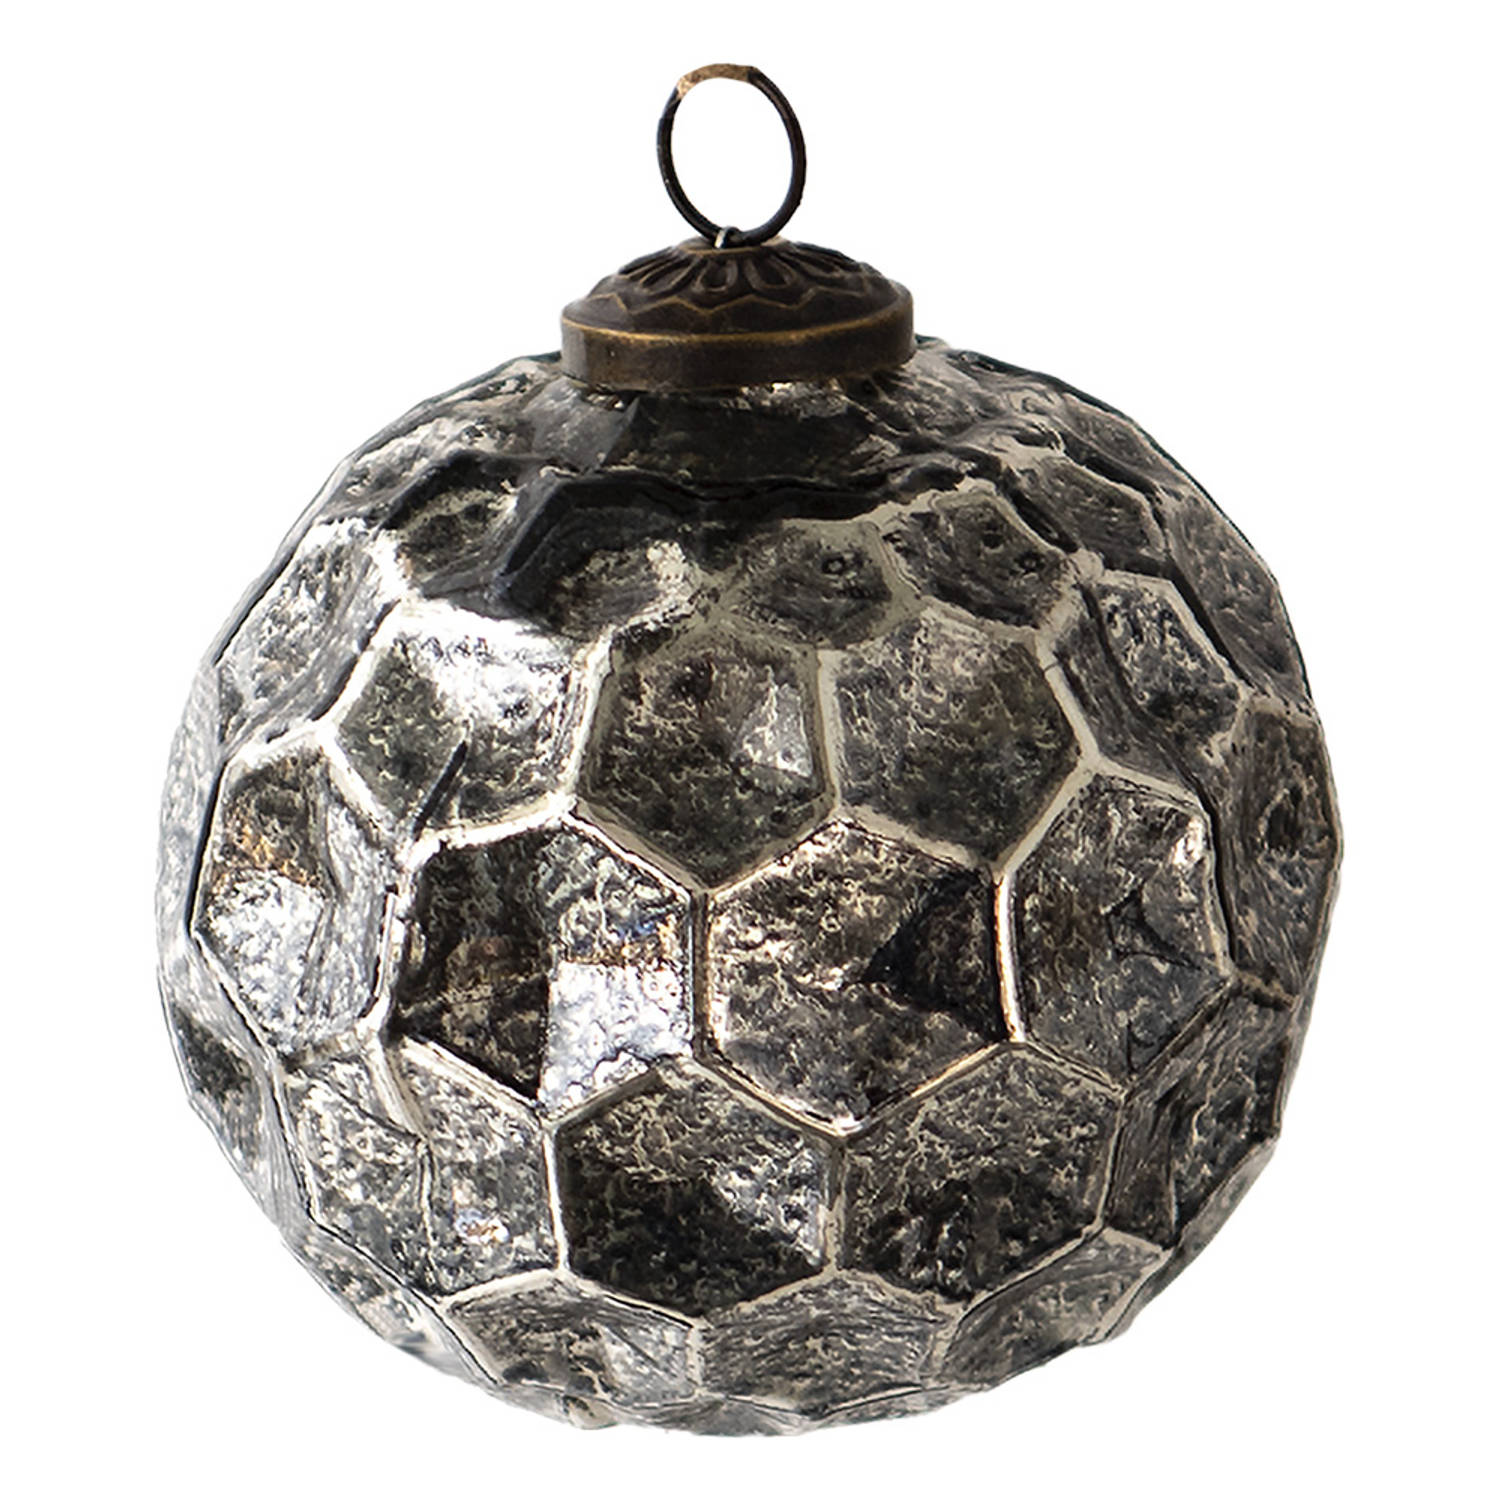 HAES DECO - Kerstbal - Formaat Ø 10x10 cm - Kleur Zwart - Materiaal Glas - Kerstversiering, Kerstdecoratie, Decoratie Hanger, Kerstboomversiering